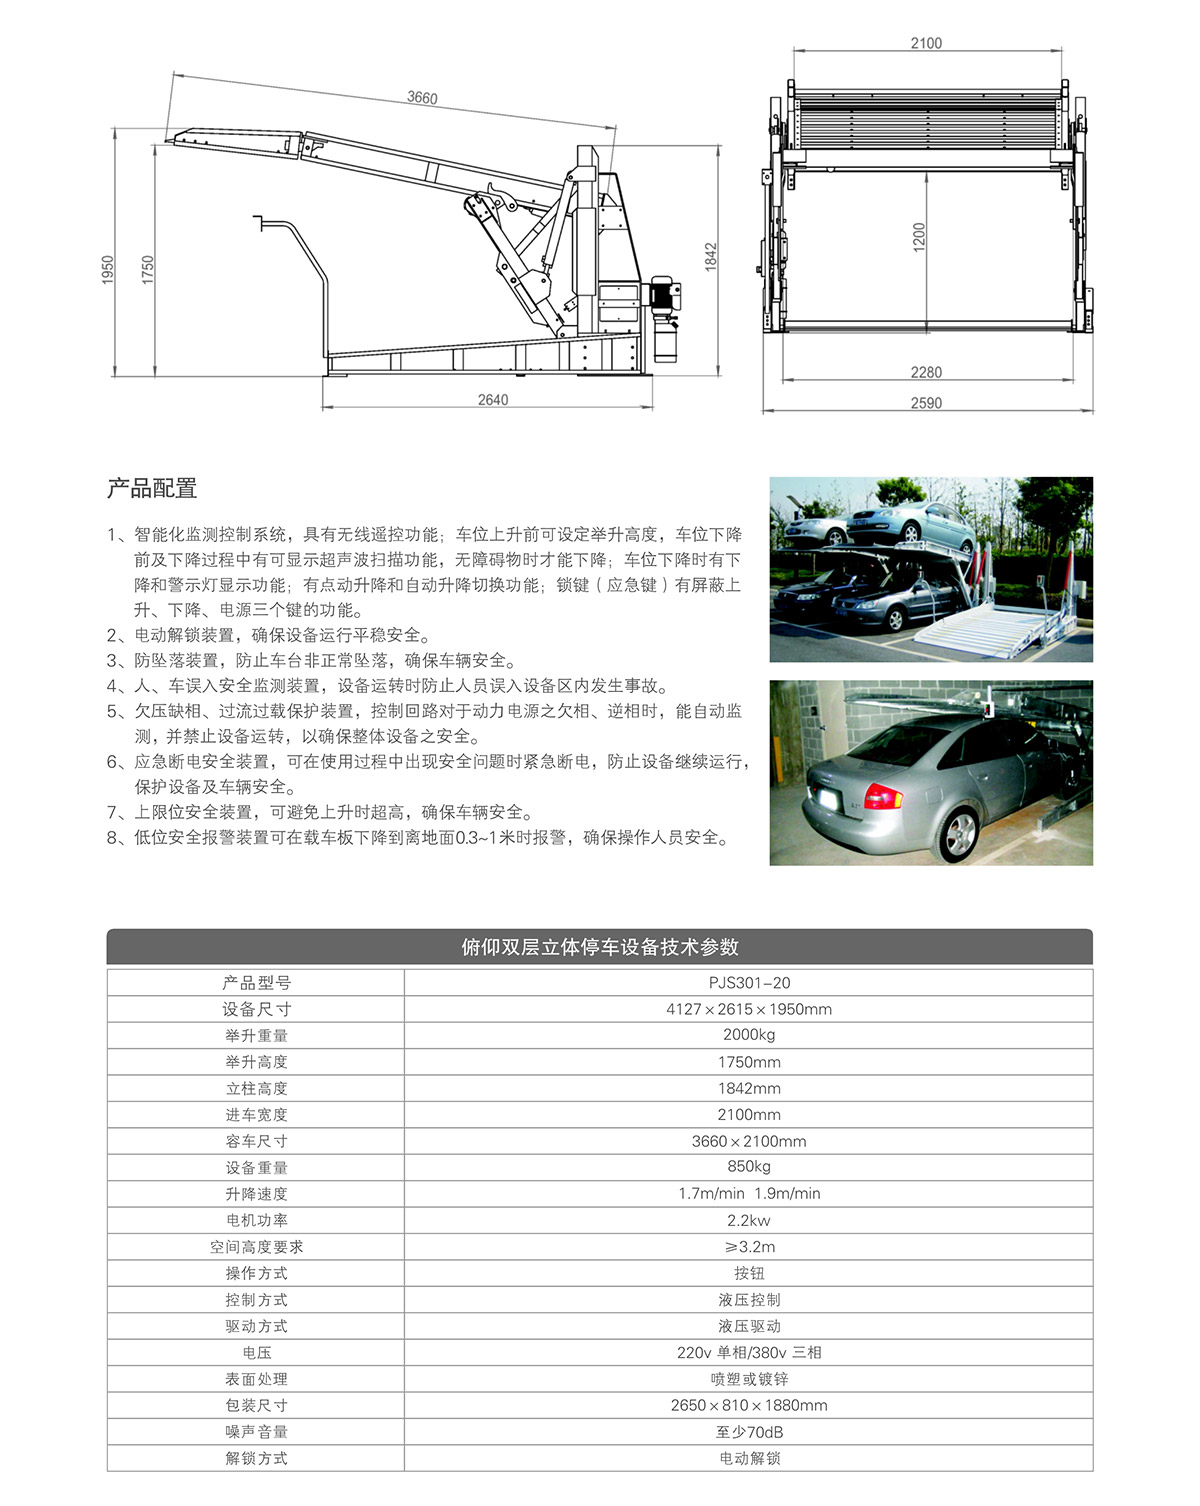 重庆俯仰简易停车设备租赁技术参数.jpg